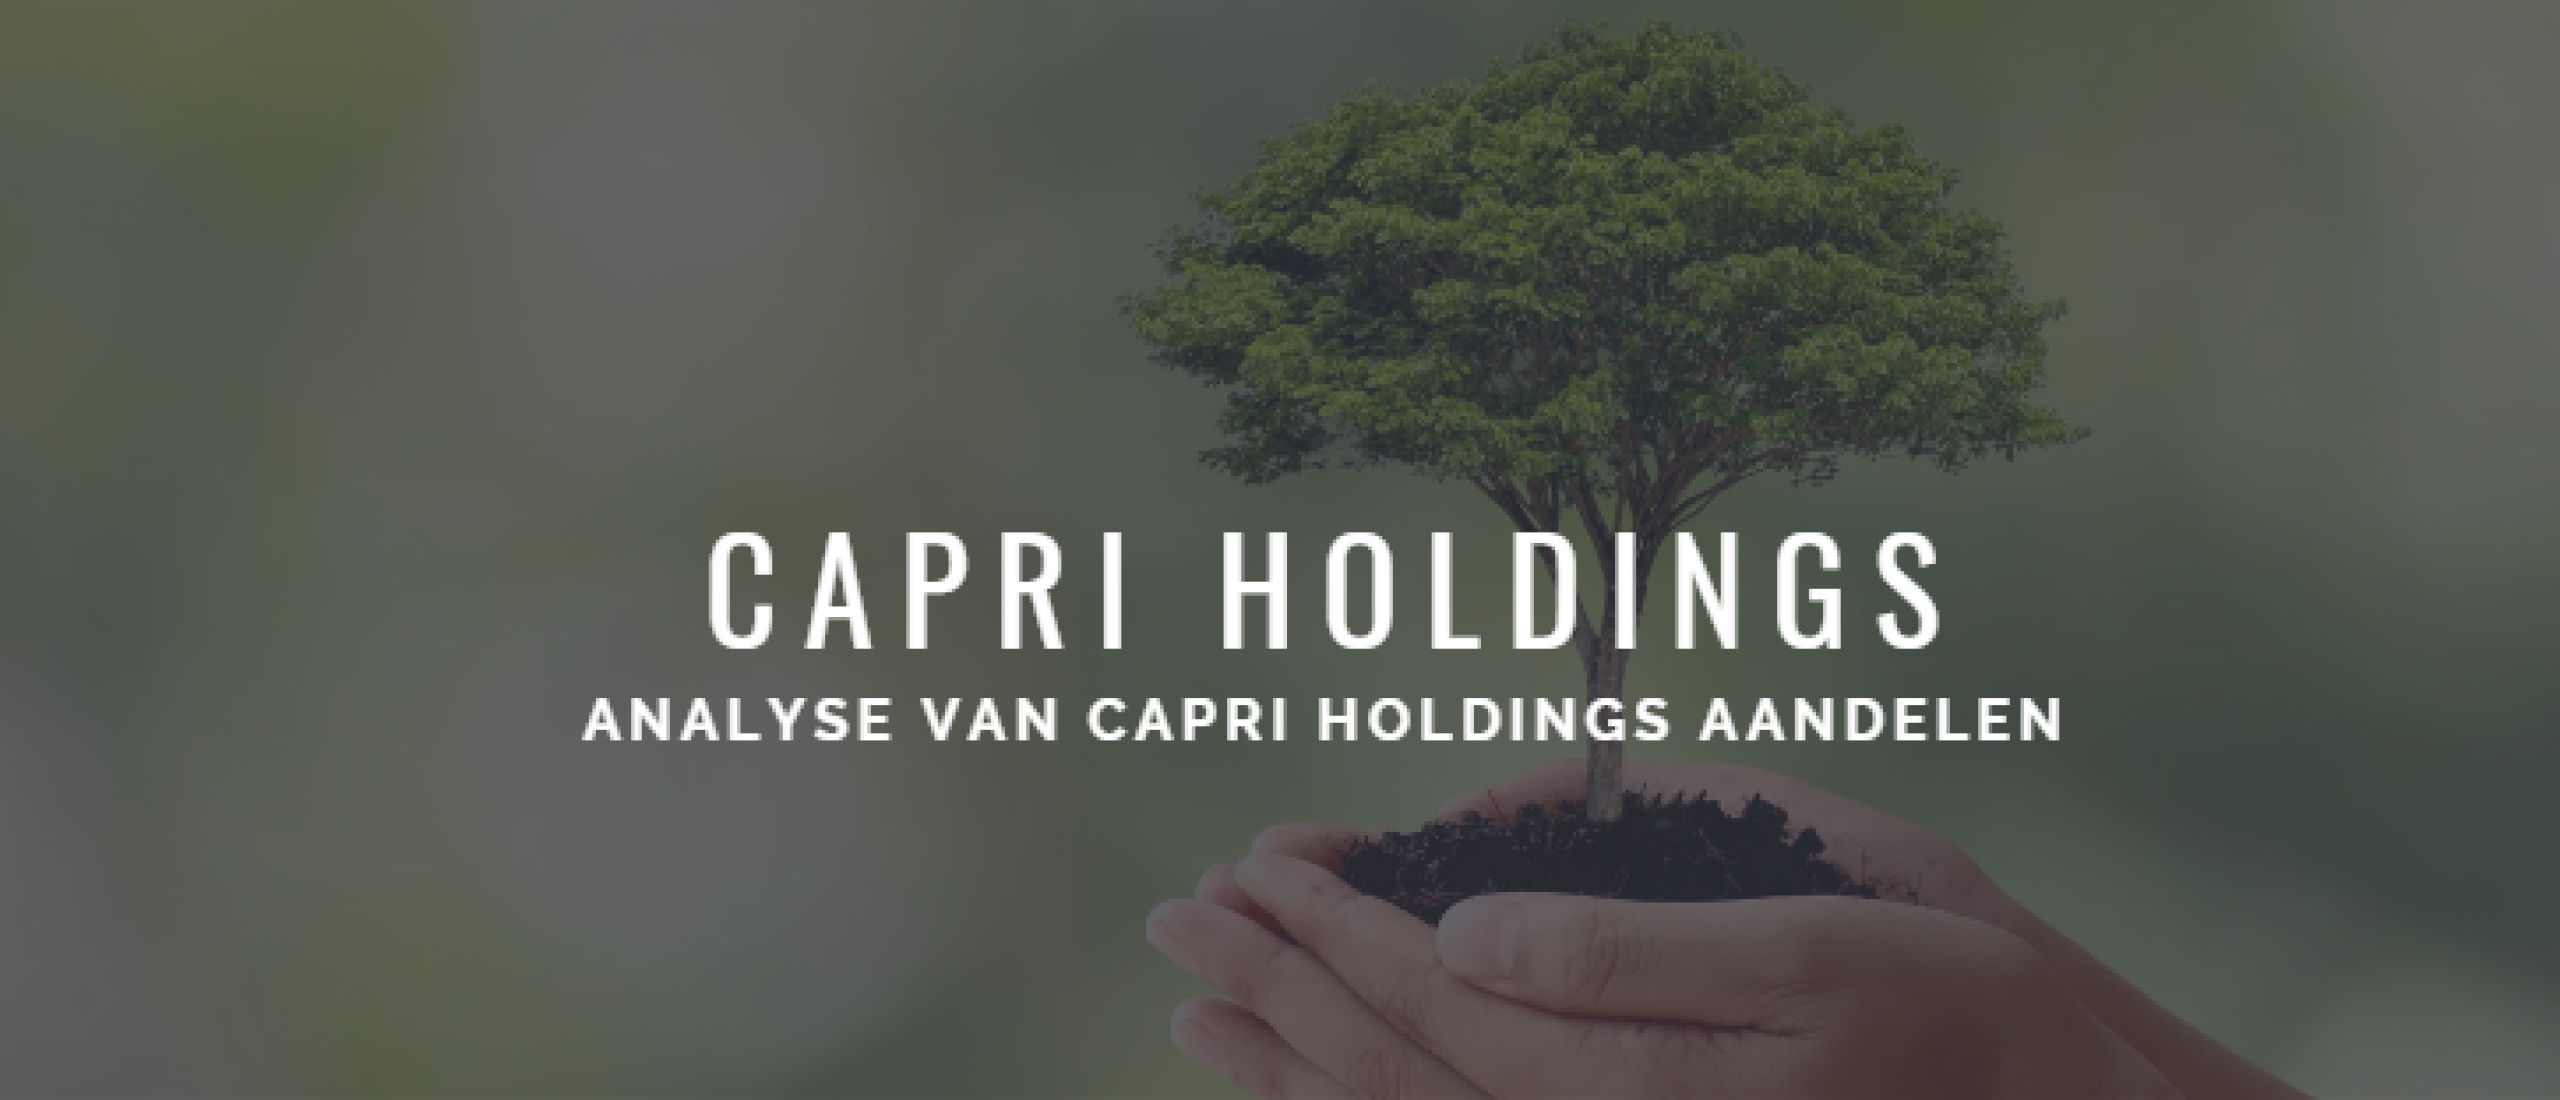 Capri Holdings aandelen kopen? Analyse +43% Groei | Happy Investors